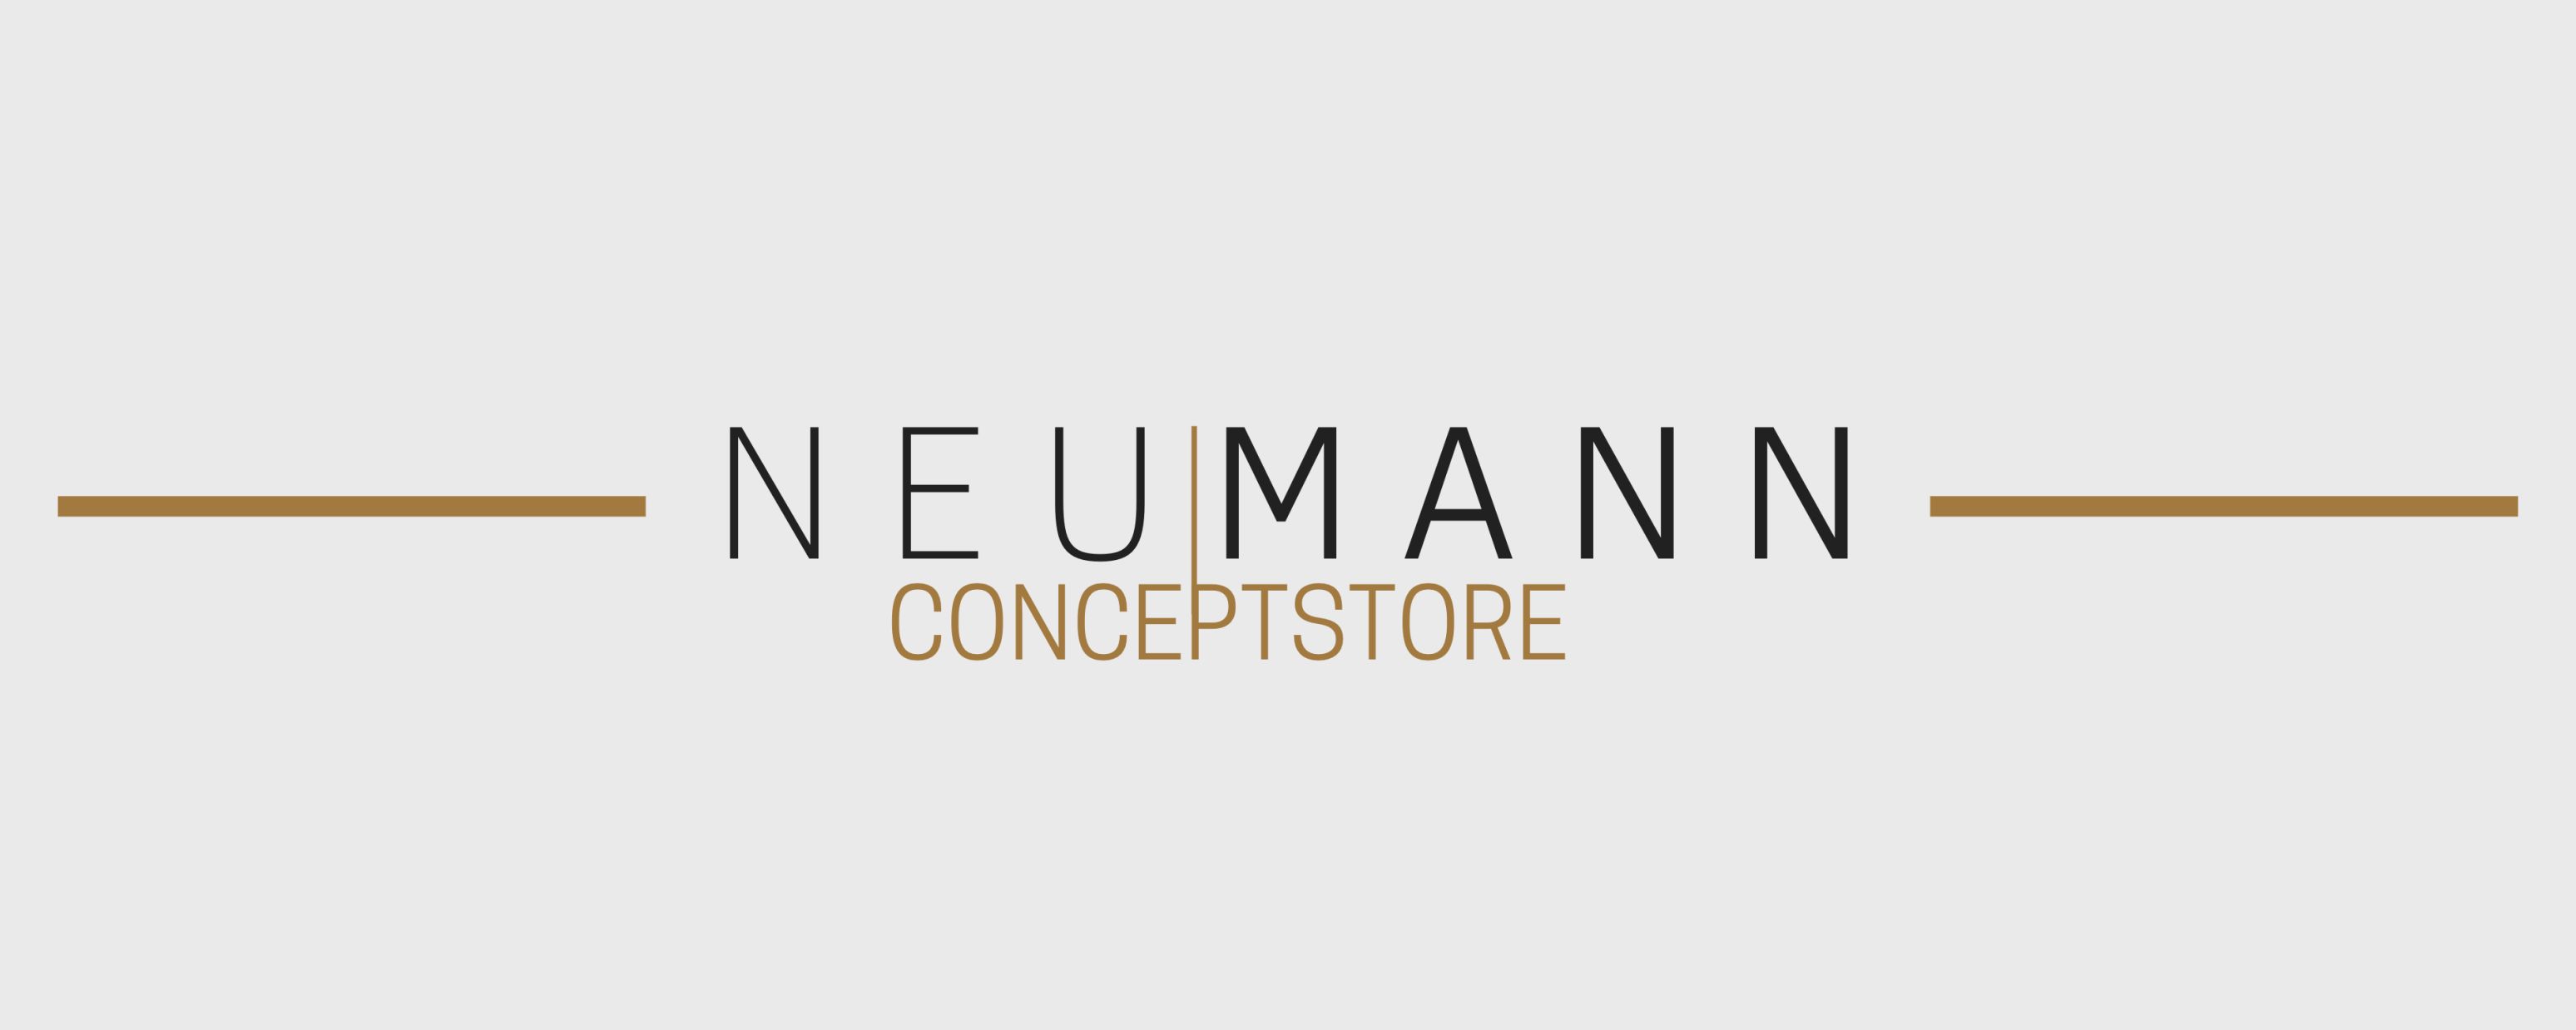 NeuMann Conceptstore